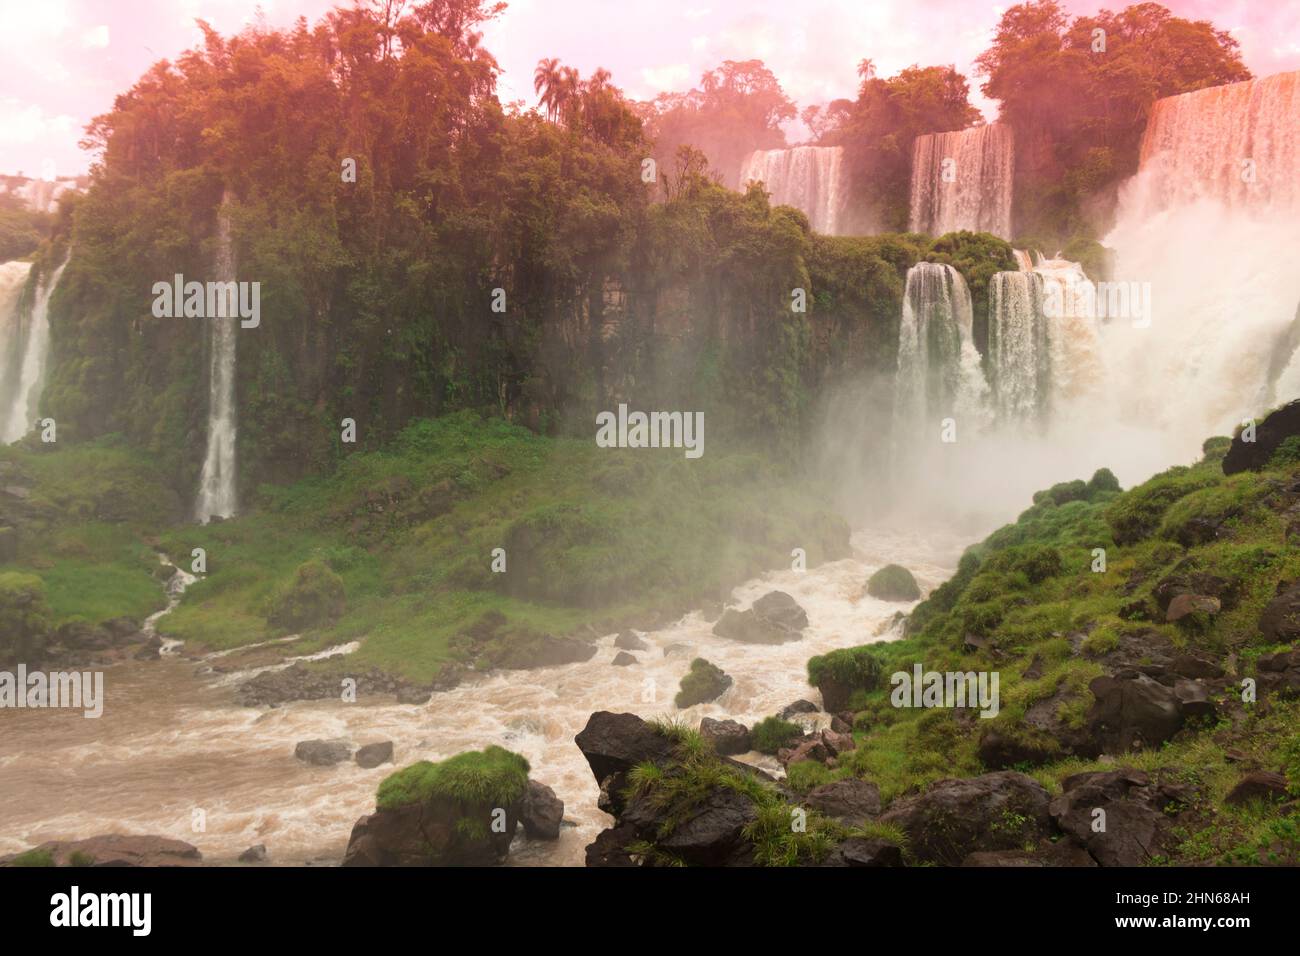 Cascate di Iguazu al confine tra Brasile e Argentina. Una delle grandi meraviglie naturali del mondo, cascate. Immagine del concetto di turismo Foto Stock